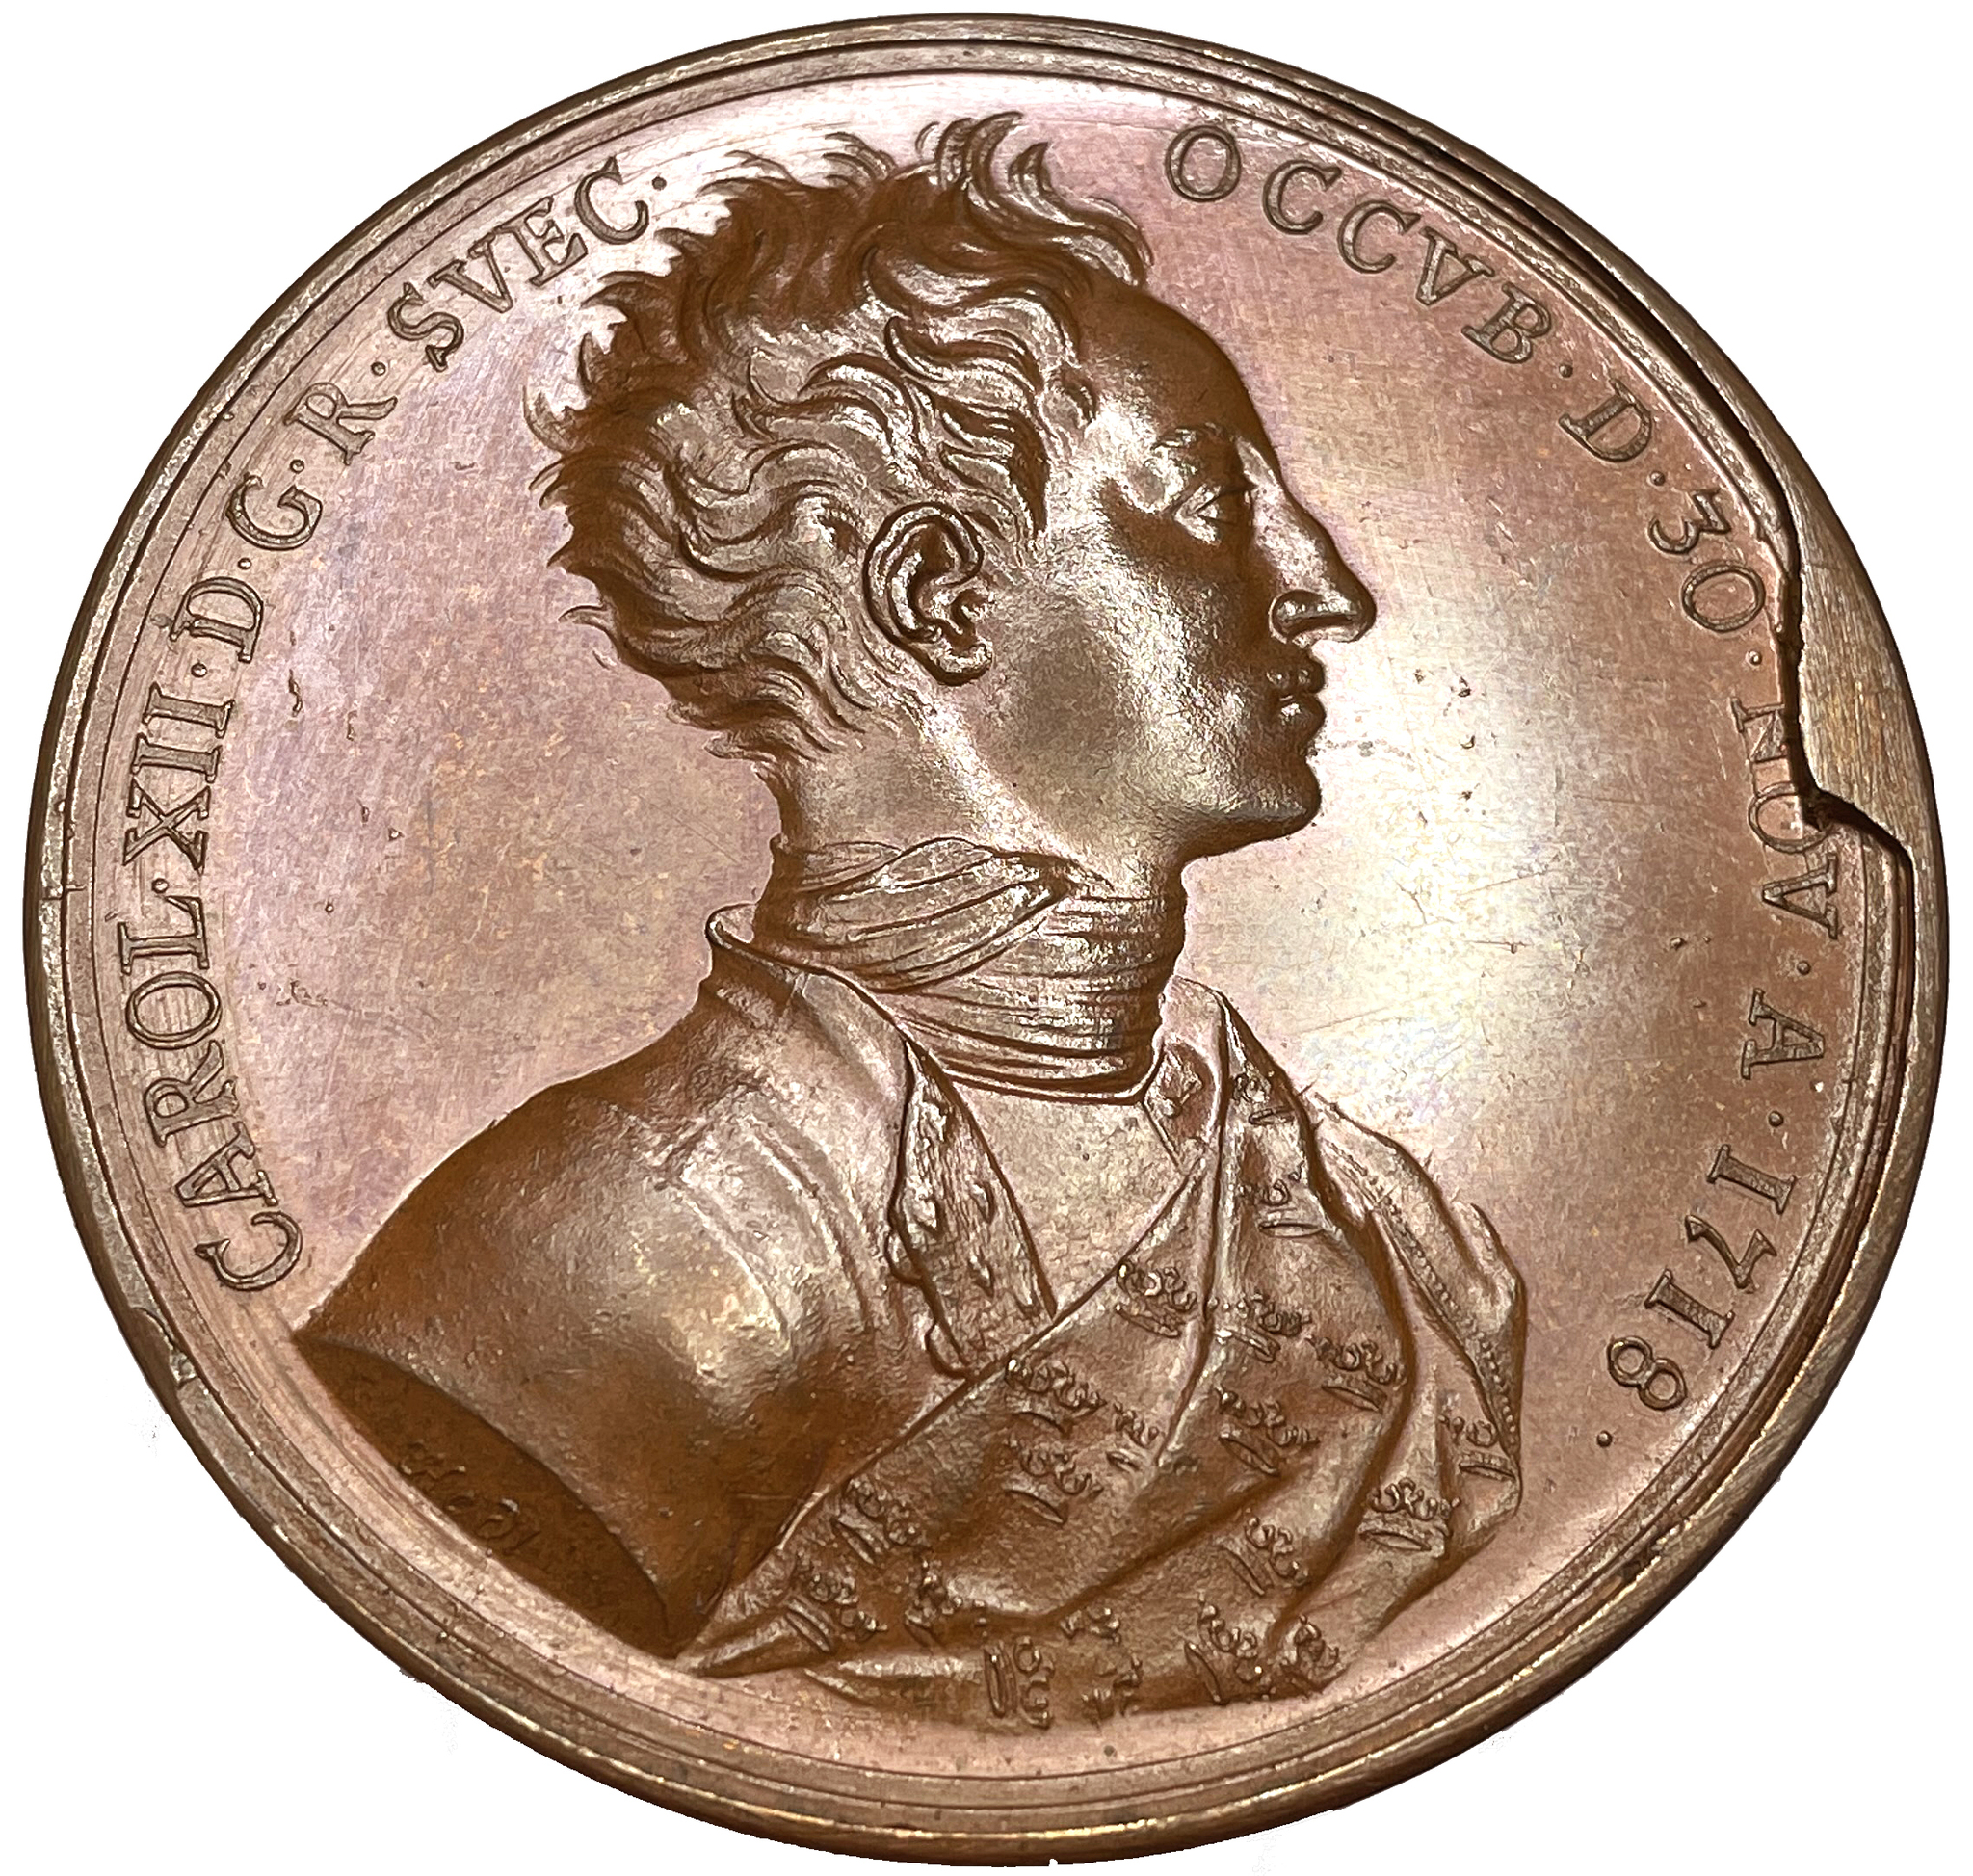 Karl XII:s död 1718 - Praktfull medalj av Johann Carl Hedlinger